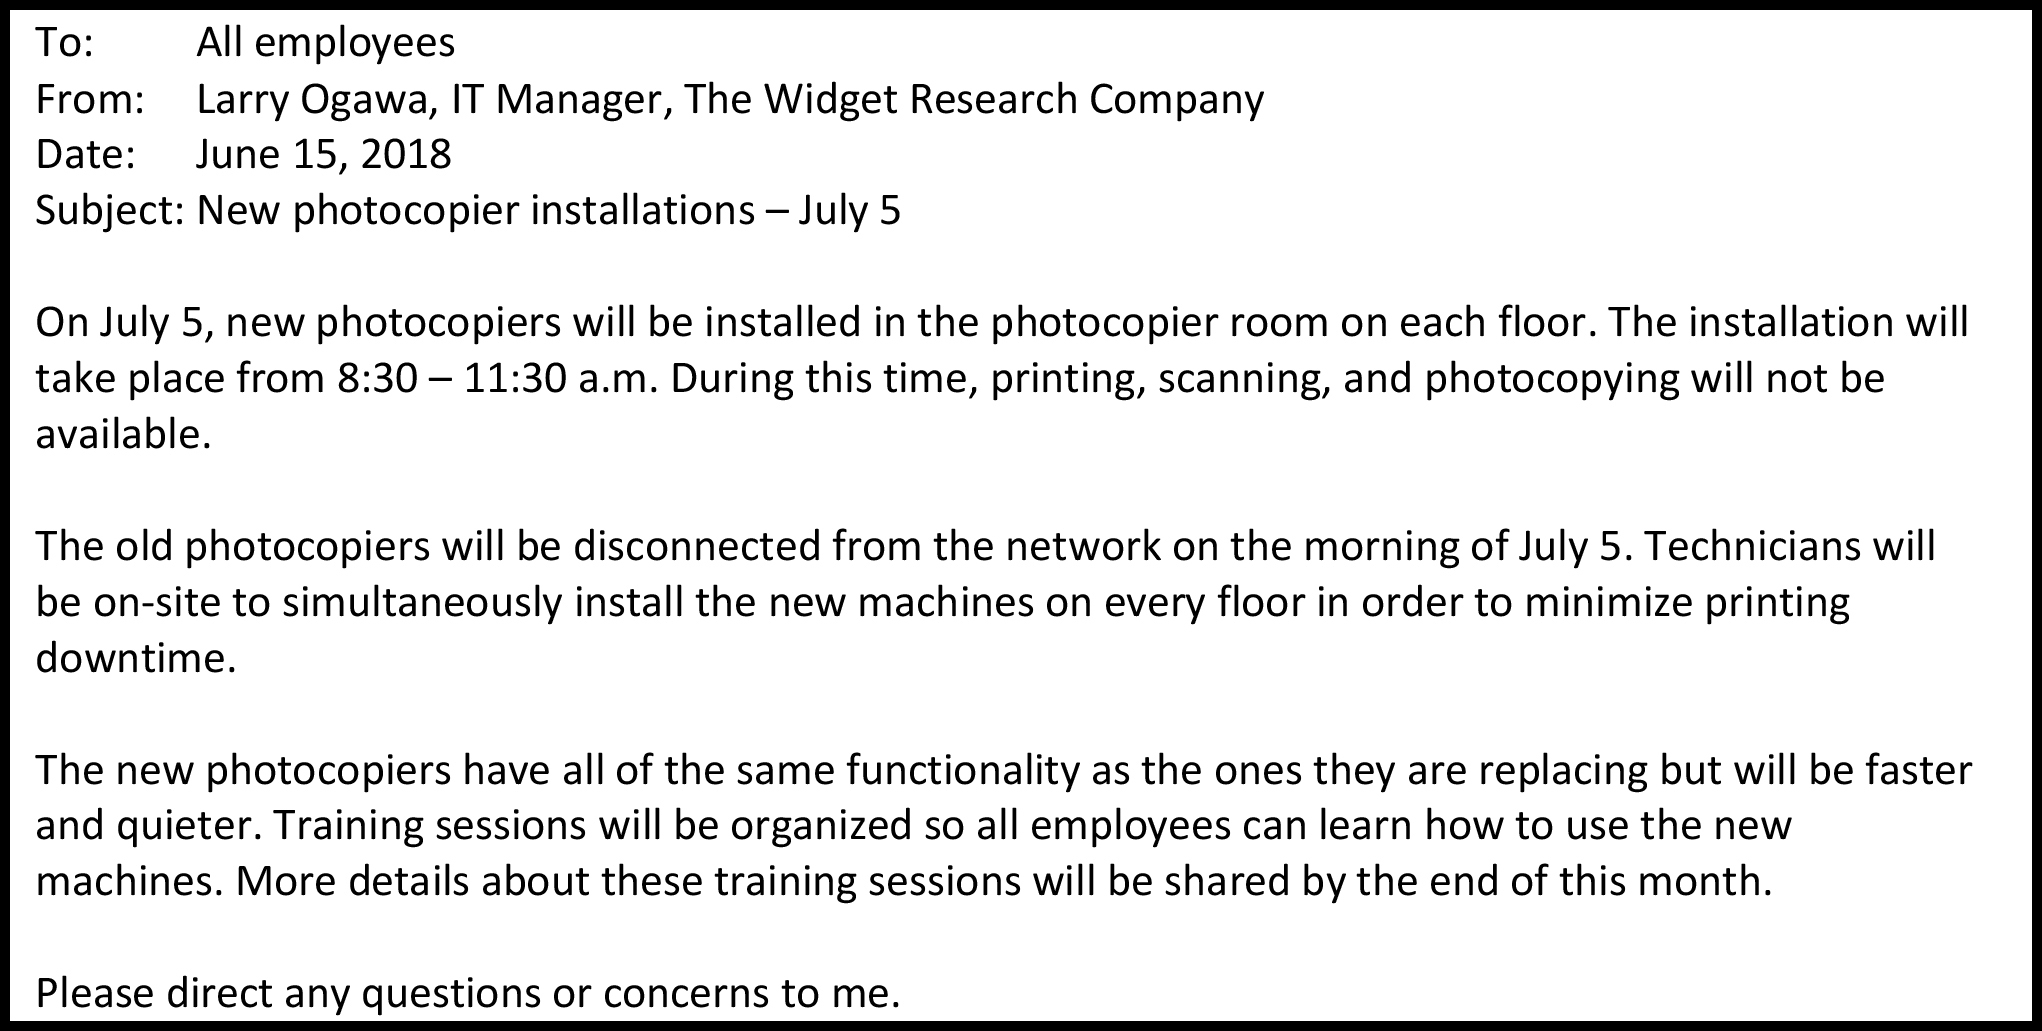 A: Todos los empleados De: Larry Ogawa, Gerente de TI, The Widget Research Company Fecha: 15 de junio de 2018 Tema: Nuevas instalaciones de fotocopiadoras — 5 de julio El 5 de julio, se instalarán nuevas fotocopiadoras en la sala de fotocopiadoras de cada piso. La instalación se llevará a cabo de 8:30 a 11:30 a.m. Durante este tiempo, la impresión, escaneo y fotocopias no estarán disponibles. Las viejas fotocopiadoras serán desconectadas de la red la mañana del 5 de julio. Los técnicos estarán en el sitio para instalar simultáneamente las nuevas máquinas en cada piso con el fin de minimizar el tiempo de inactividad de impresión. Las nuevas fotocopiadoras tienen todas la misma funcionalidad que las que están reemplazando pero serán más rápidas y silenciosas. Se organizarán sesiones de capacitación para que todos los empleados aprendan a usar las nuevas máquinas. A finales de este mes se compartirán más detalles sobre estas sesiones de capacitación. Por favor, dirija cualquier duda o inquietud a mí.